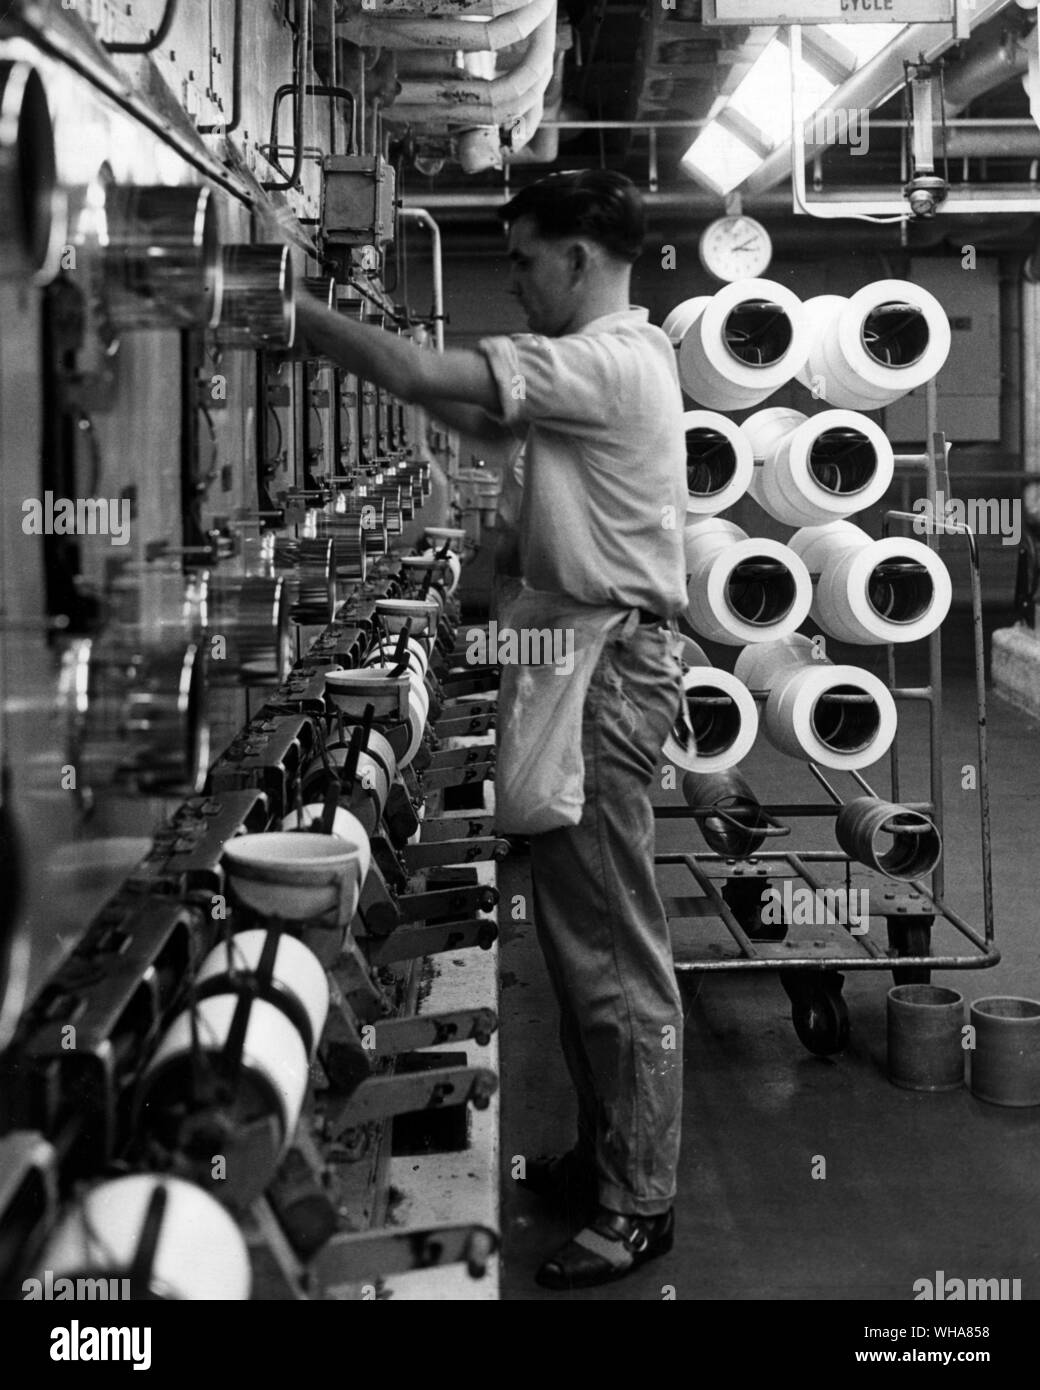 Première étape dans la production de fils de nylon implique la fusion et de l'extrusion de polymère par filières. Courants d'air frais et solidifier le polymère extrudé qui est ensuite enroulé sur les bouteilles prêtes à l'étirage à froid et le traitement ultérieur. Ici certaines des unités de rotation dans l'usine principale au siège de BNS à Pontypool Monmouthshire. Nylon britannique Spinners Ltd Banque D'Images